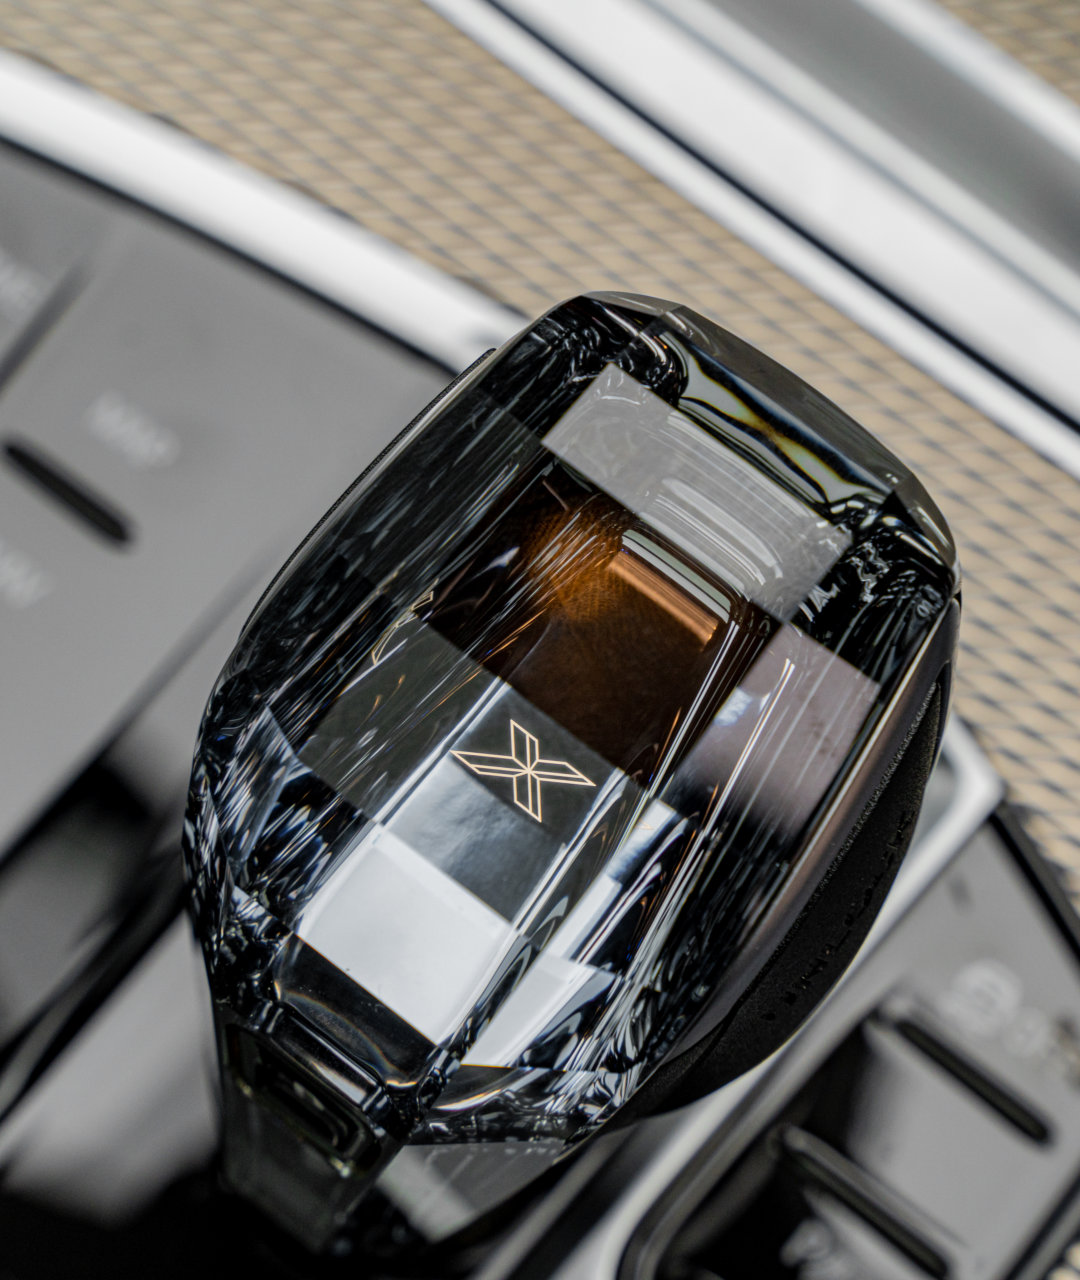 2019 BMW X5 40d M Sport crystal gear lever